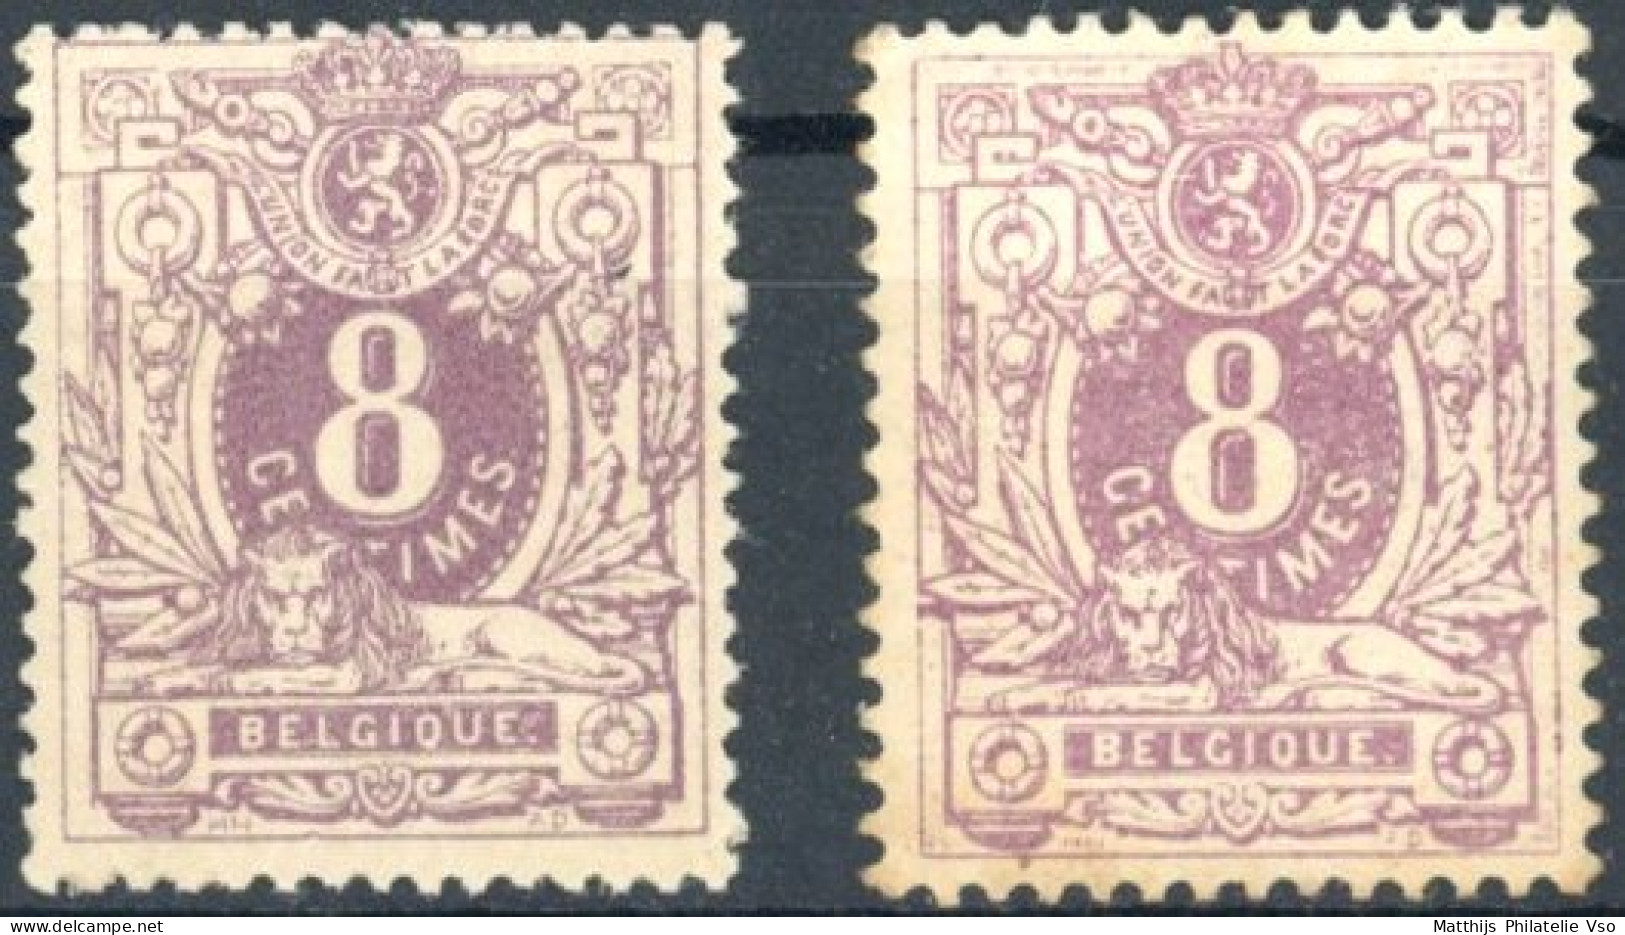 [* SUP] N° 29a+29b, 8cent - 2 Nuances - Cote: 275€ - 1869-1883 Leopold II.